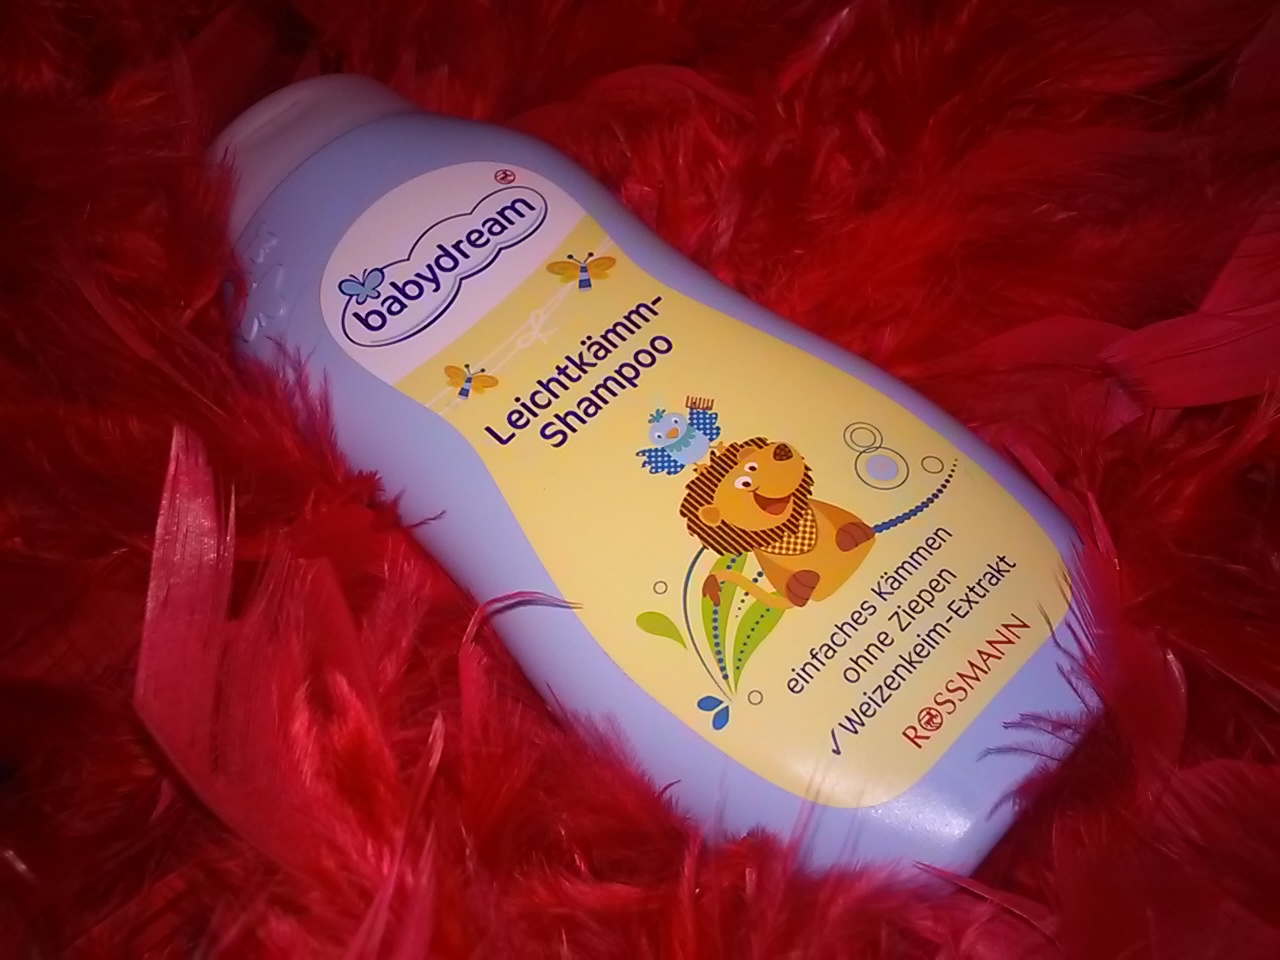 babydream szampon do włosów dla dzieci ułatwiający rozczesywanie